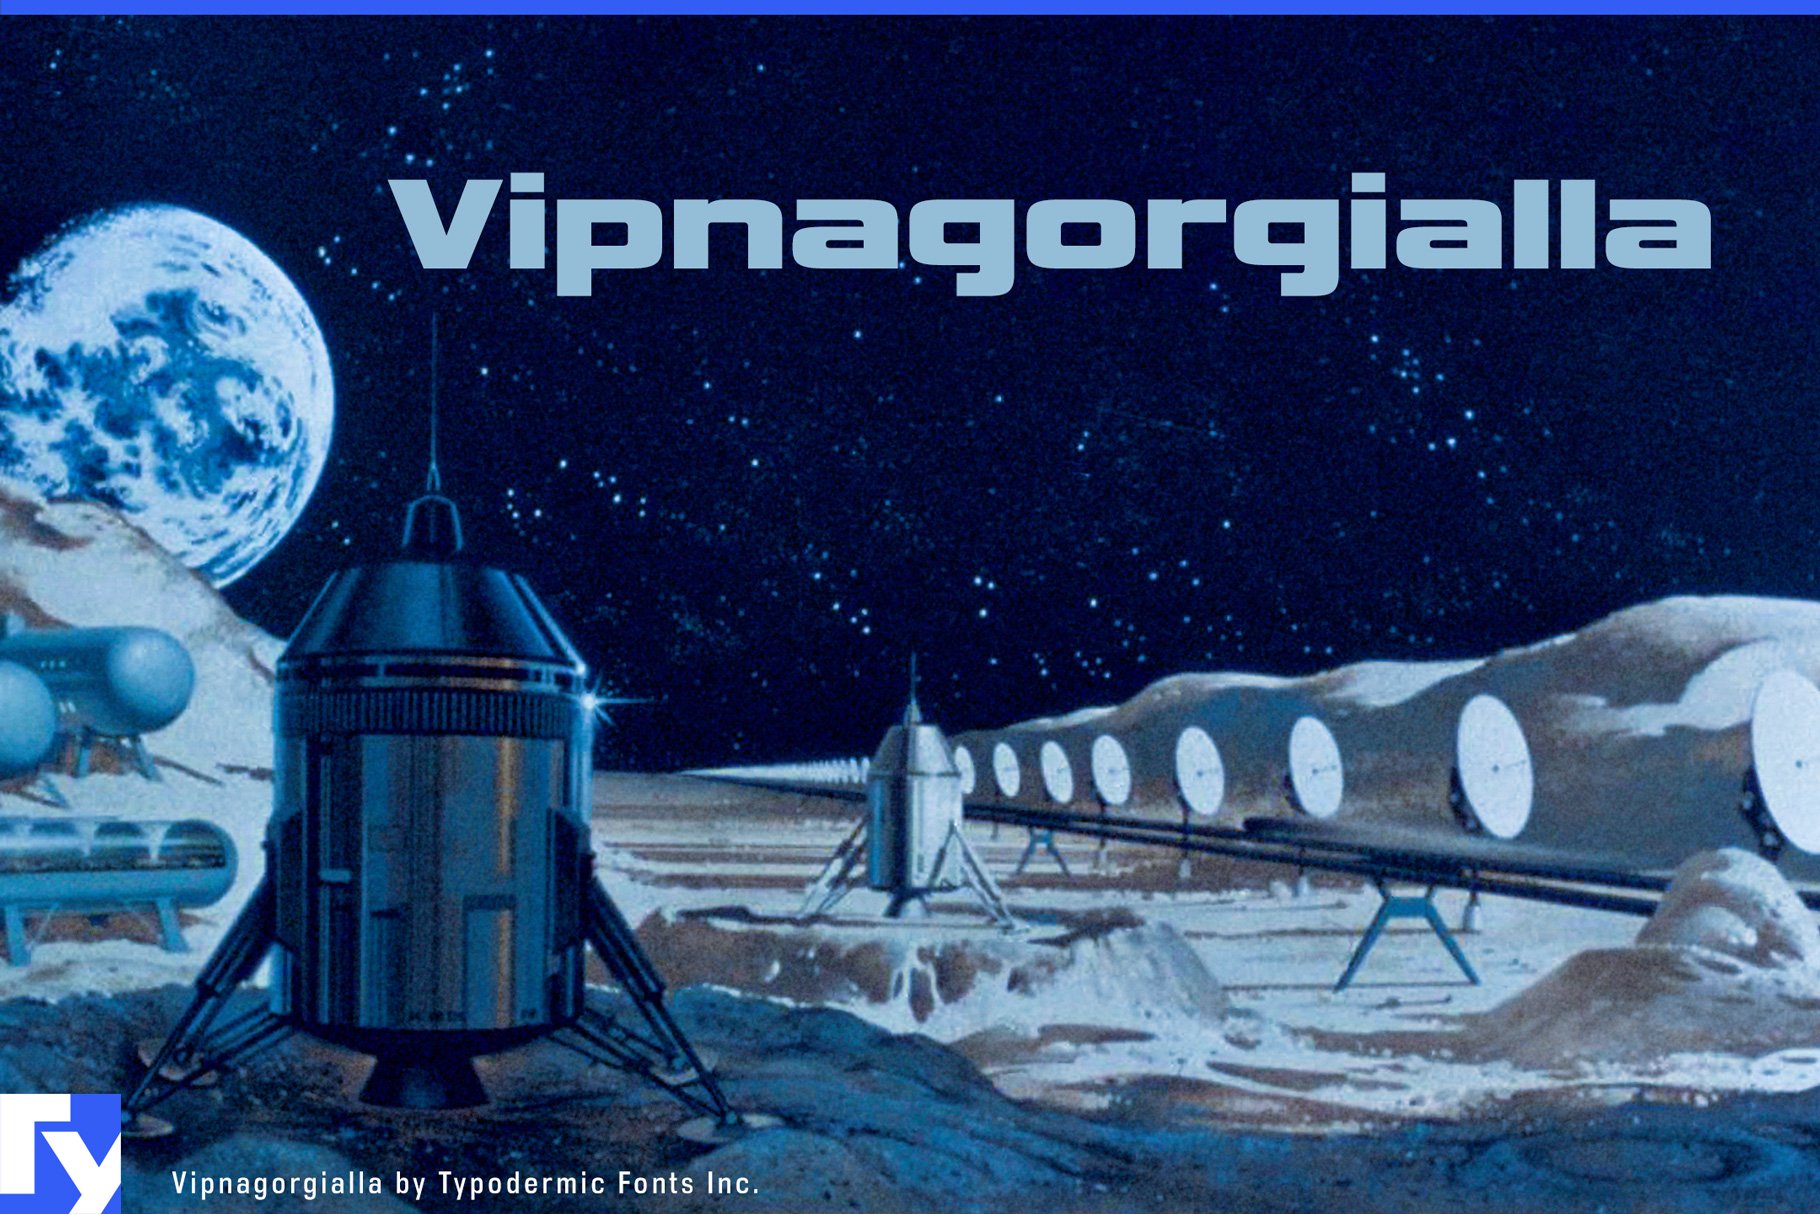 Vipnagorgialla cover image.